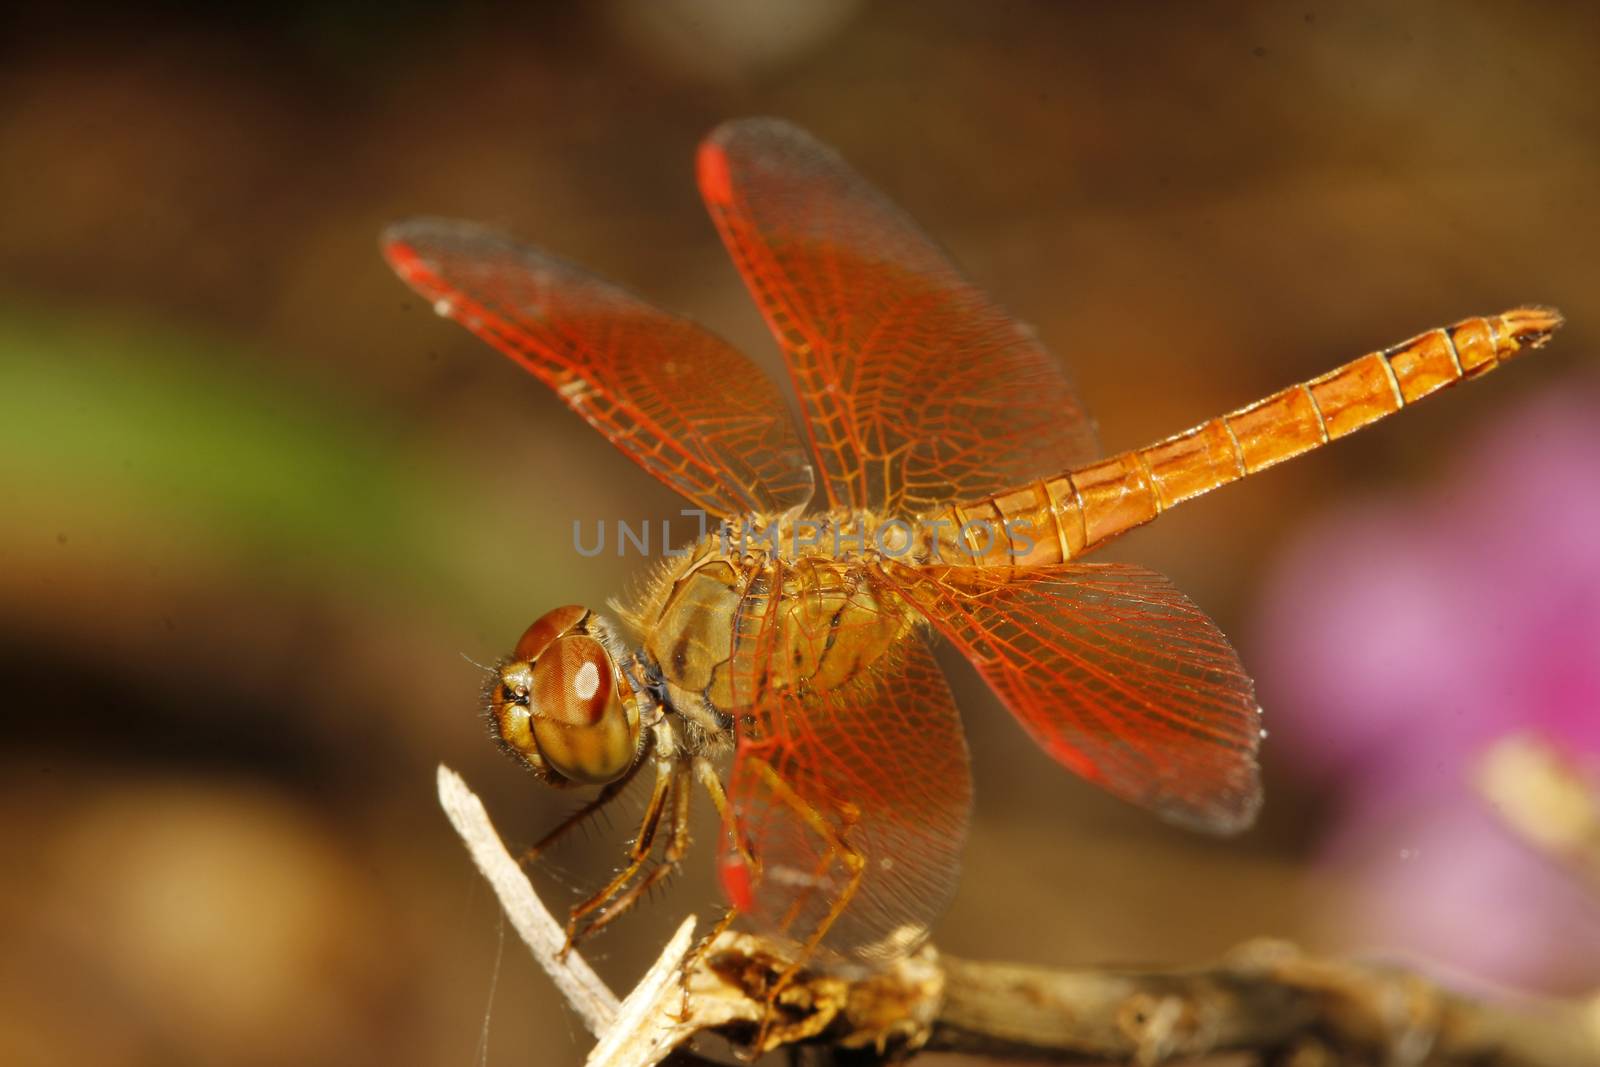 close up orange dragonfly in garden thailand